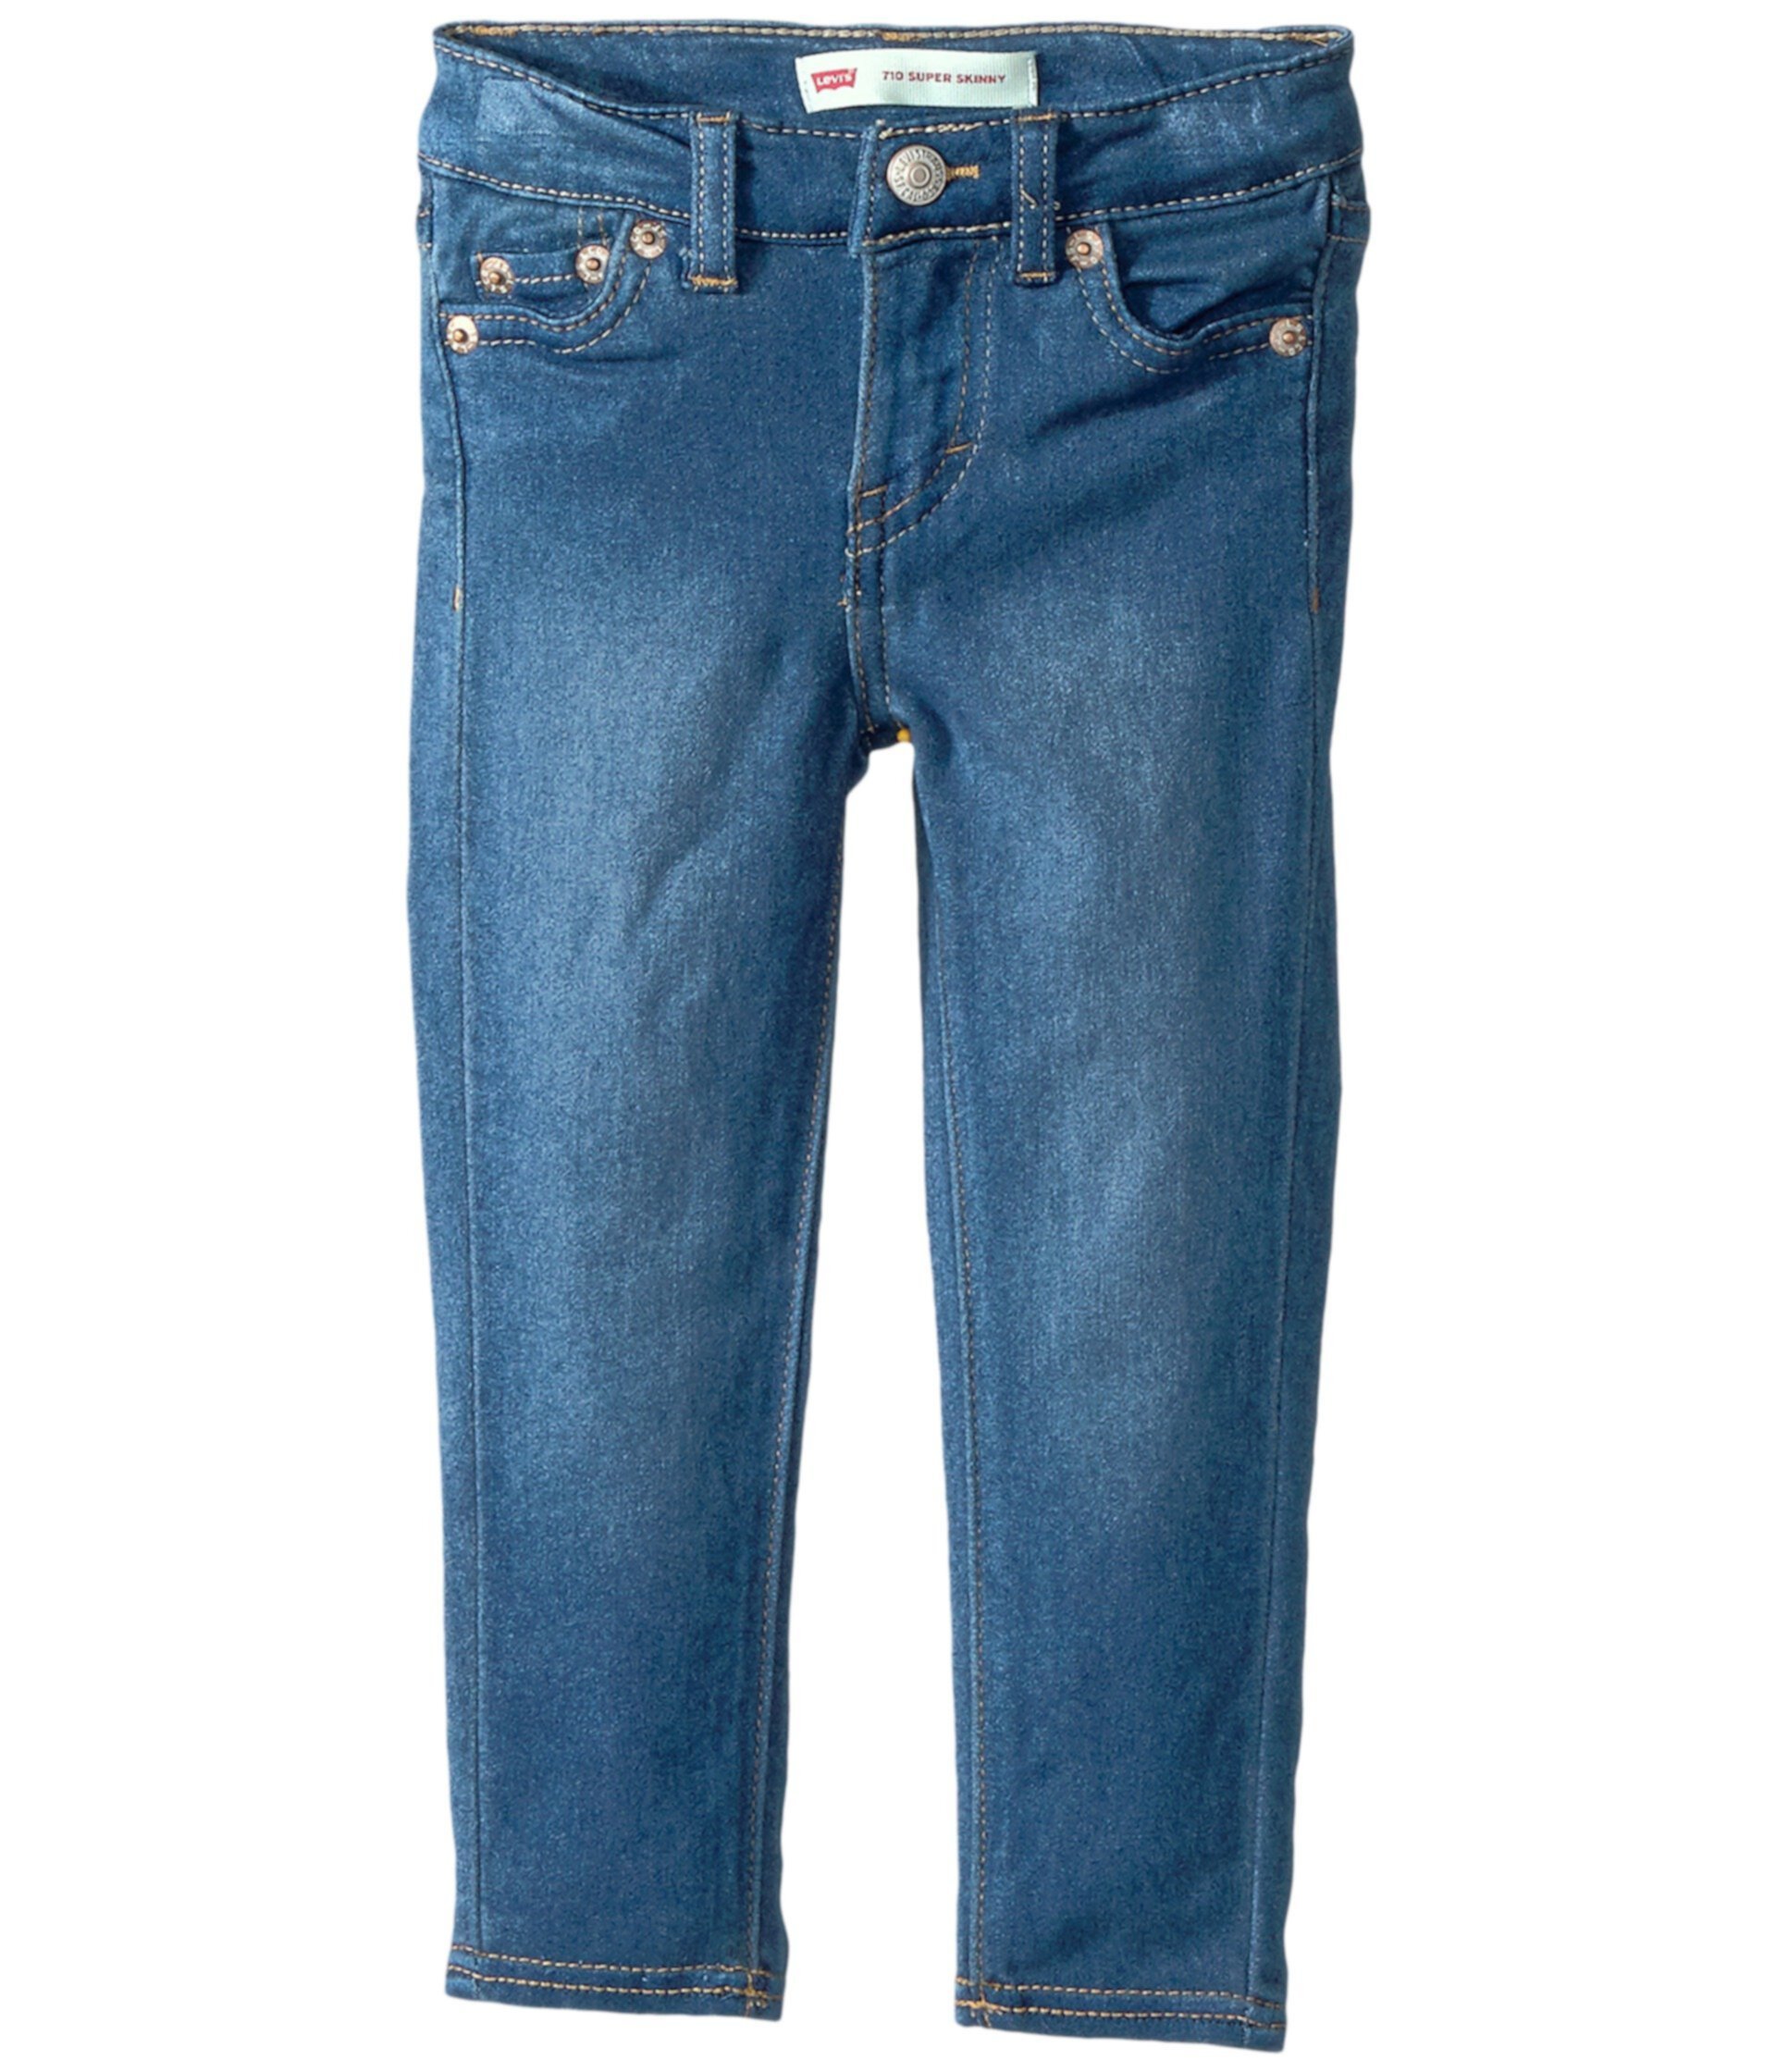 710 Rayon супер джинсы скинни (малыш) Levi's®